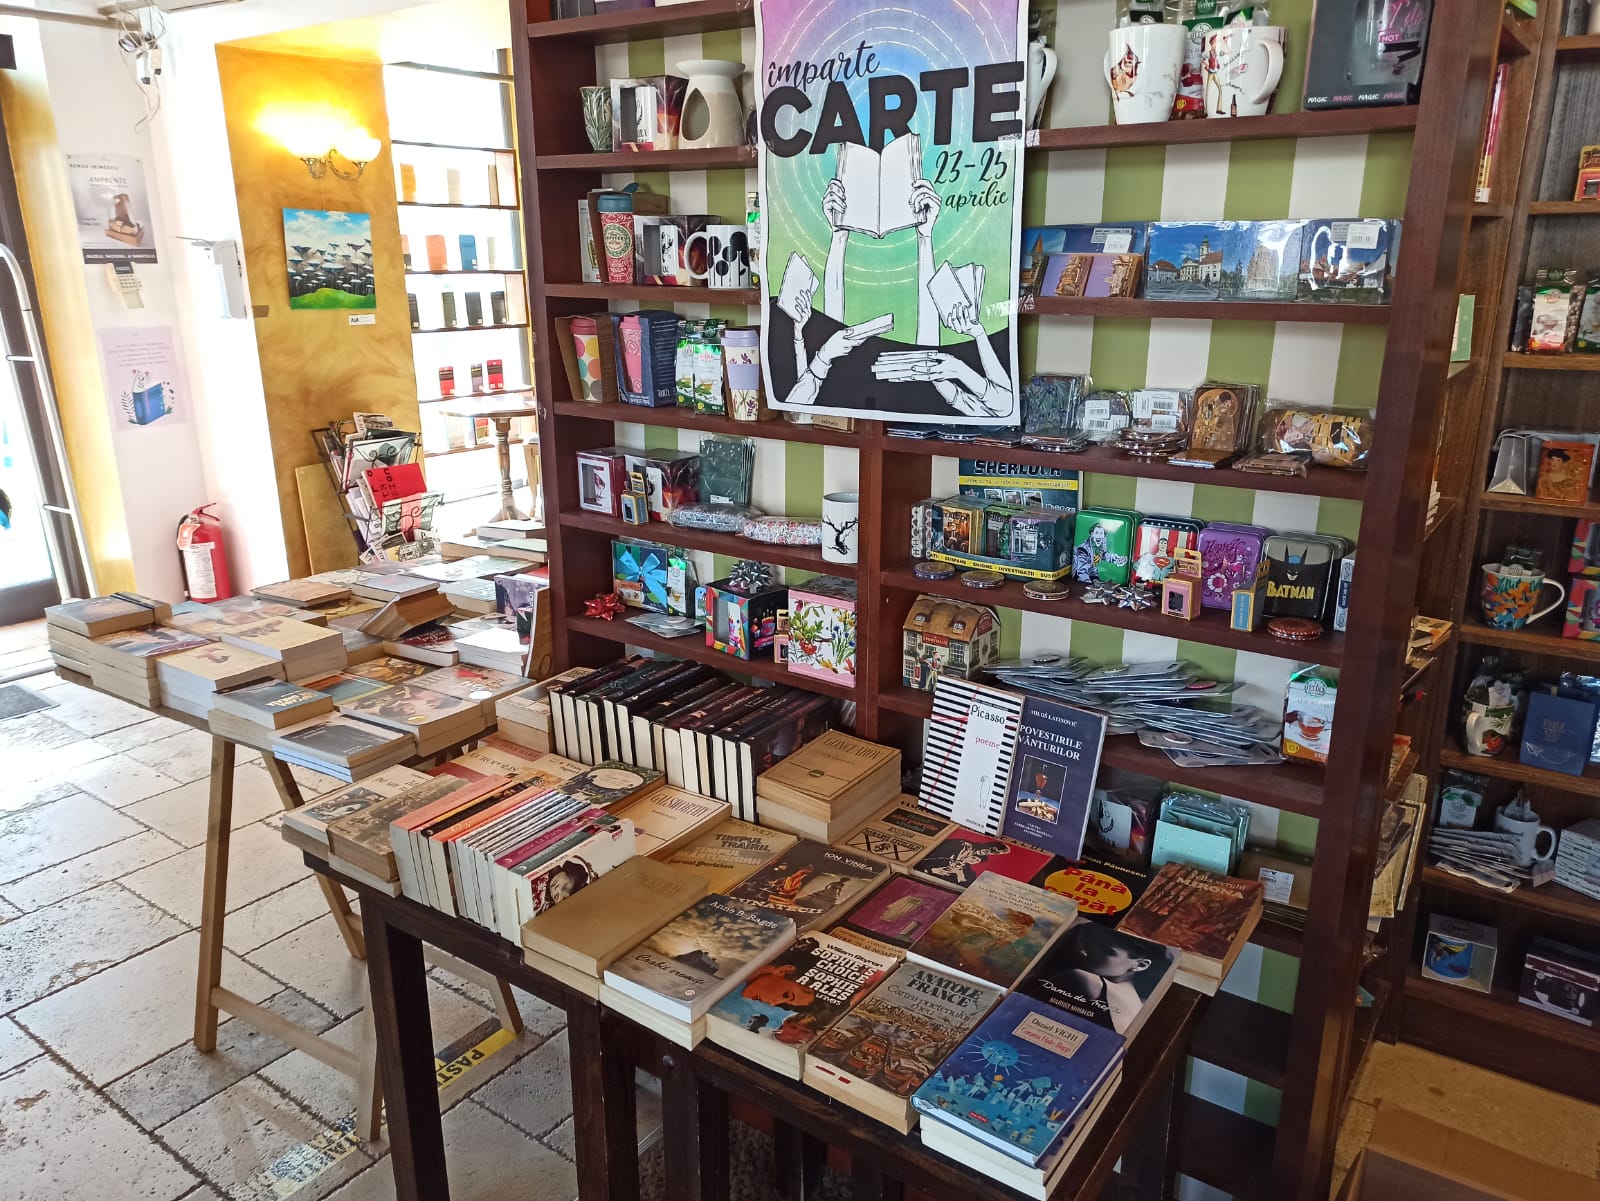 Împarte carte, la Timișoara: „Vechile cărți prind din nou suflet în mâinile altui cititor”